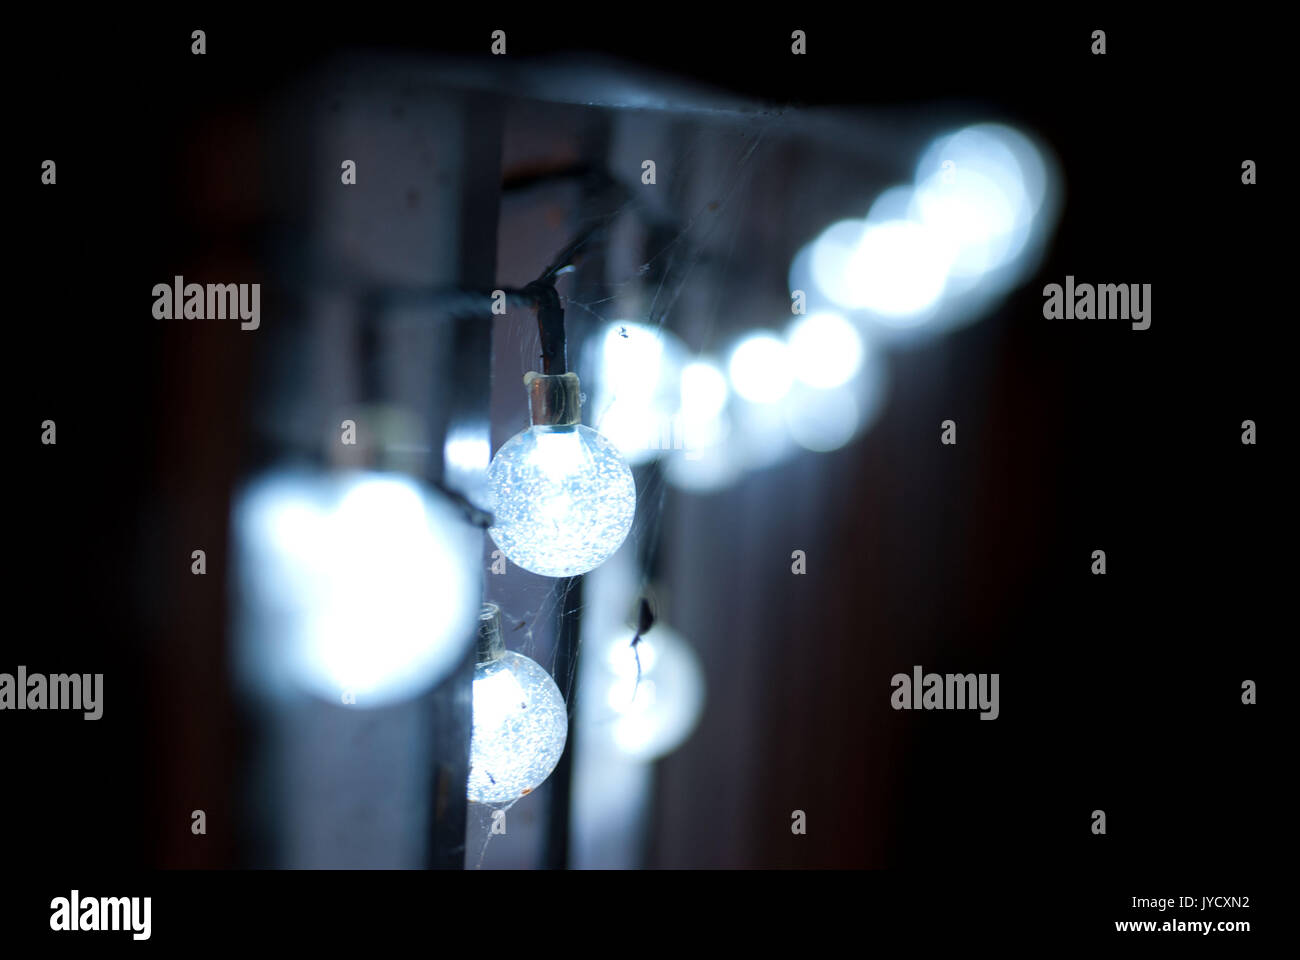 Macrophotographie d'araignées construit sur sphère bleuâtre string lights Banque D'Images